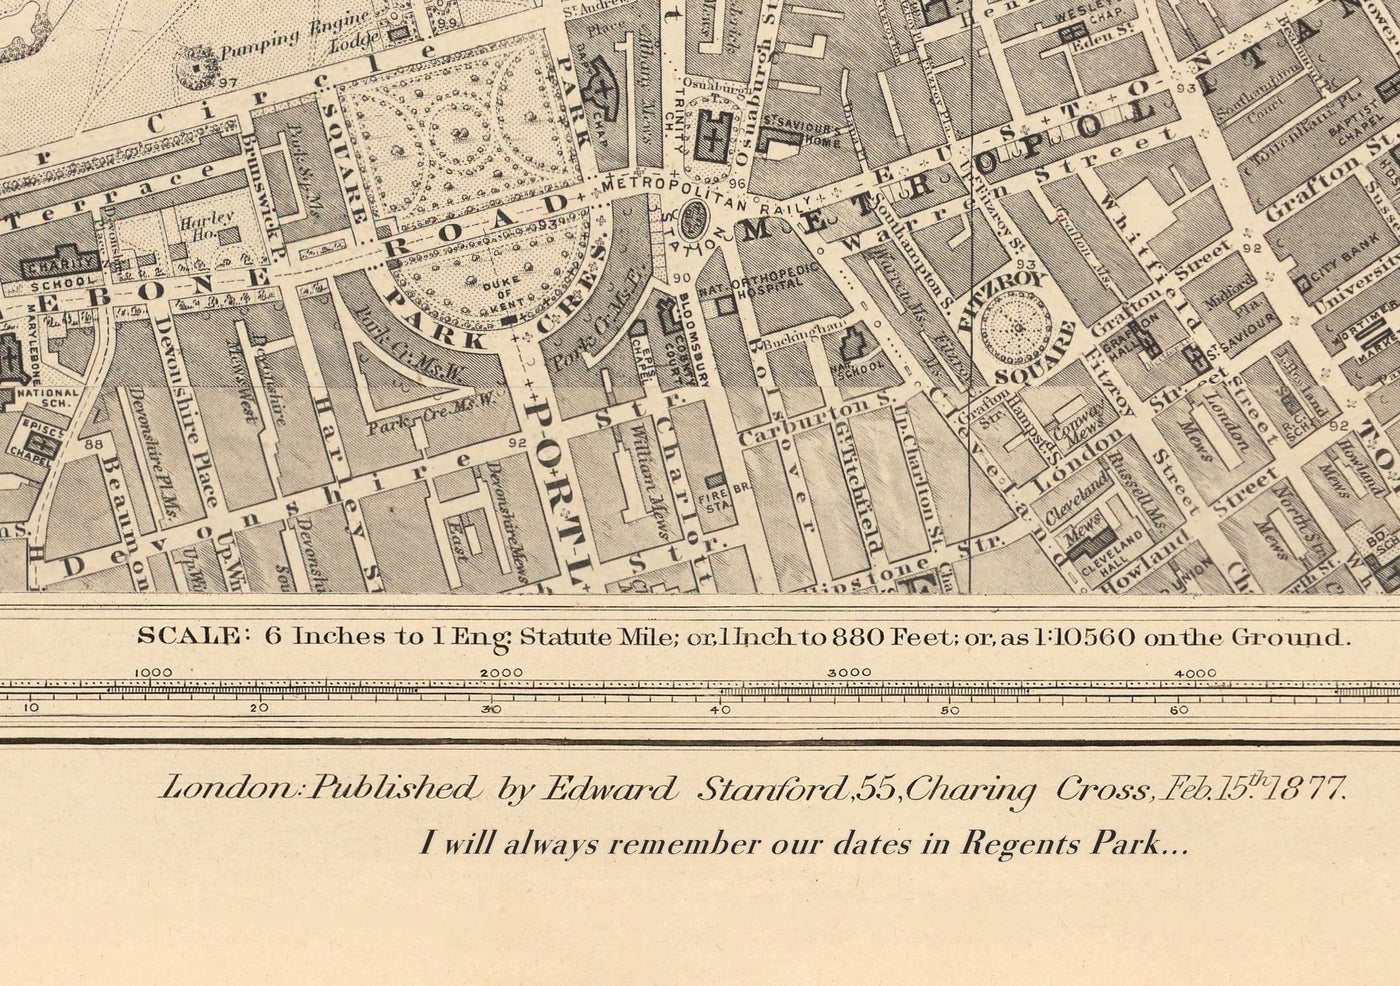 Old Map of West London, 1862 by Edward Stanford - Notting Hill, Kensington, Portobello Road, Shepherds Bush, Bayswater - W11, W2, W8, SW7, W14, W6, W12, W10